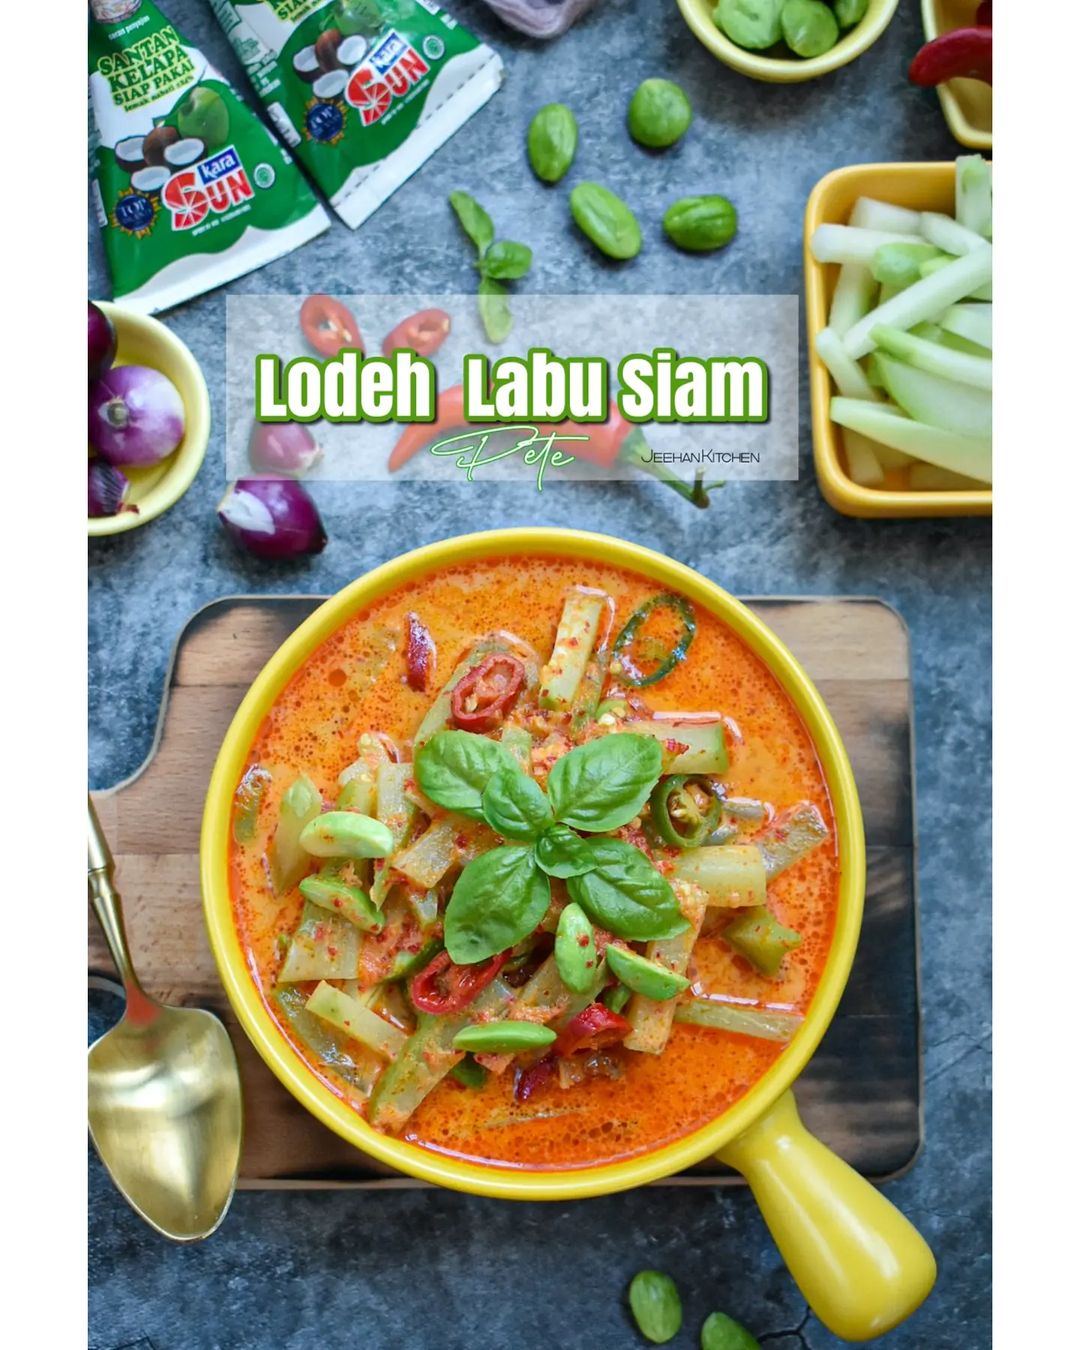 Resep Lodeh Labu Siam Dengan Petai dari @jeehan_kitchen